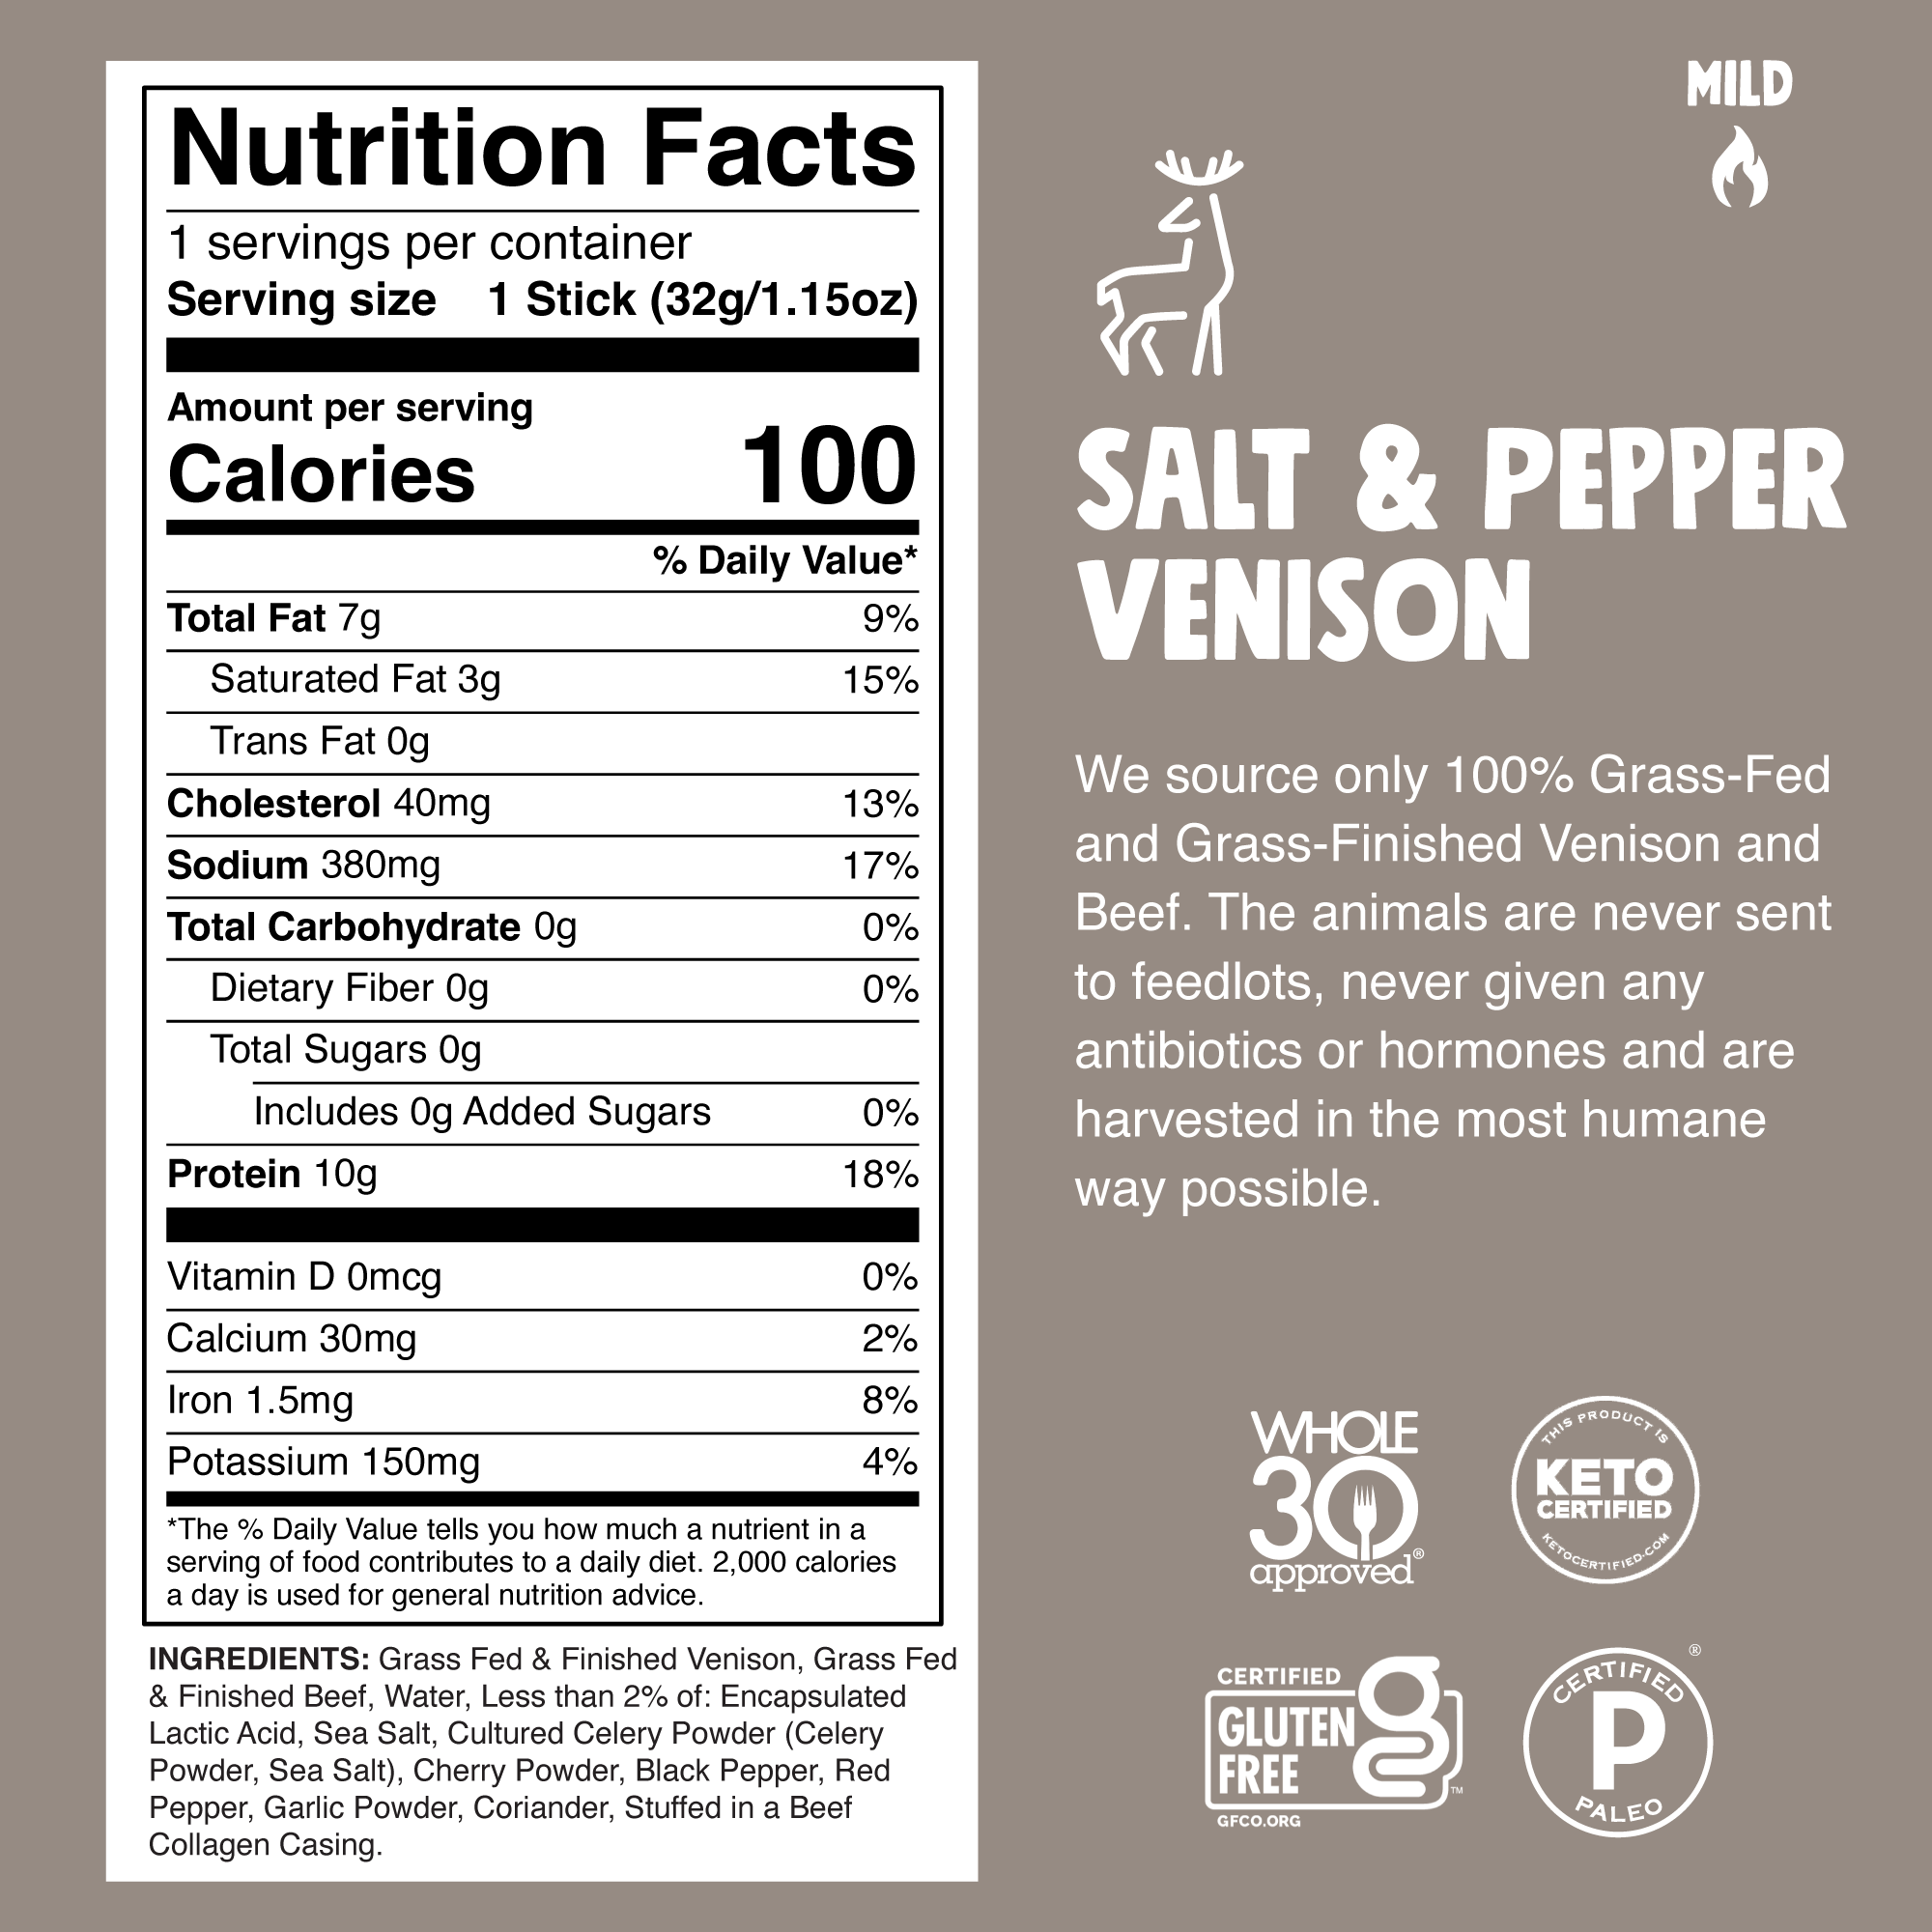 Salt & Pepper Venison